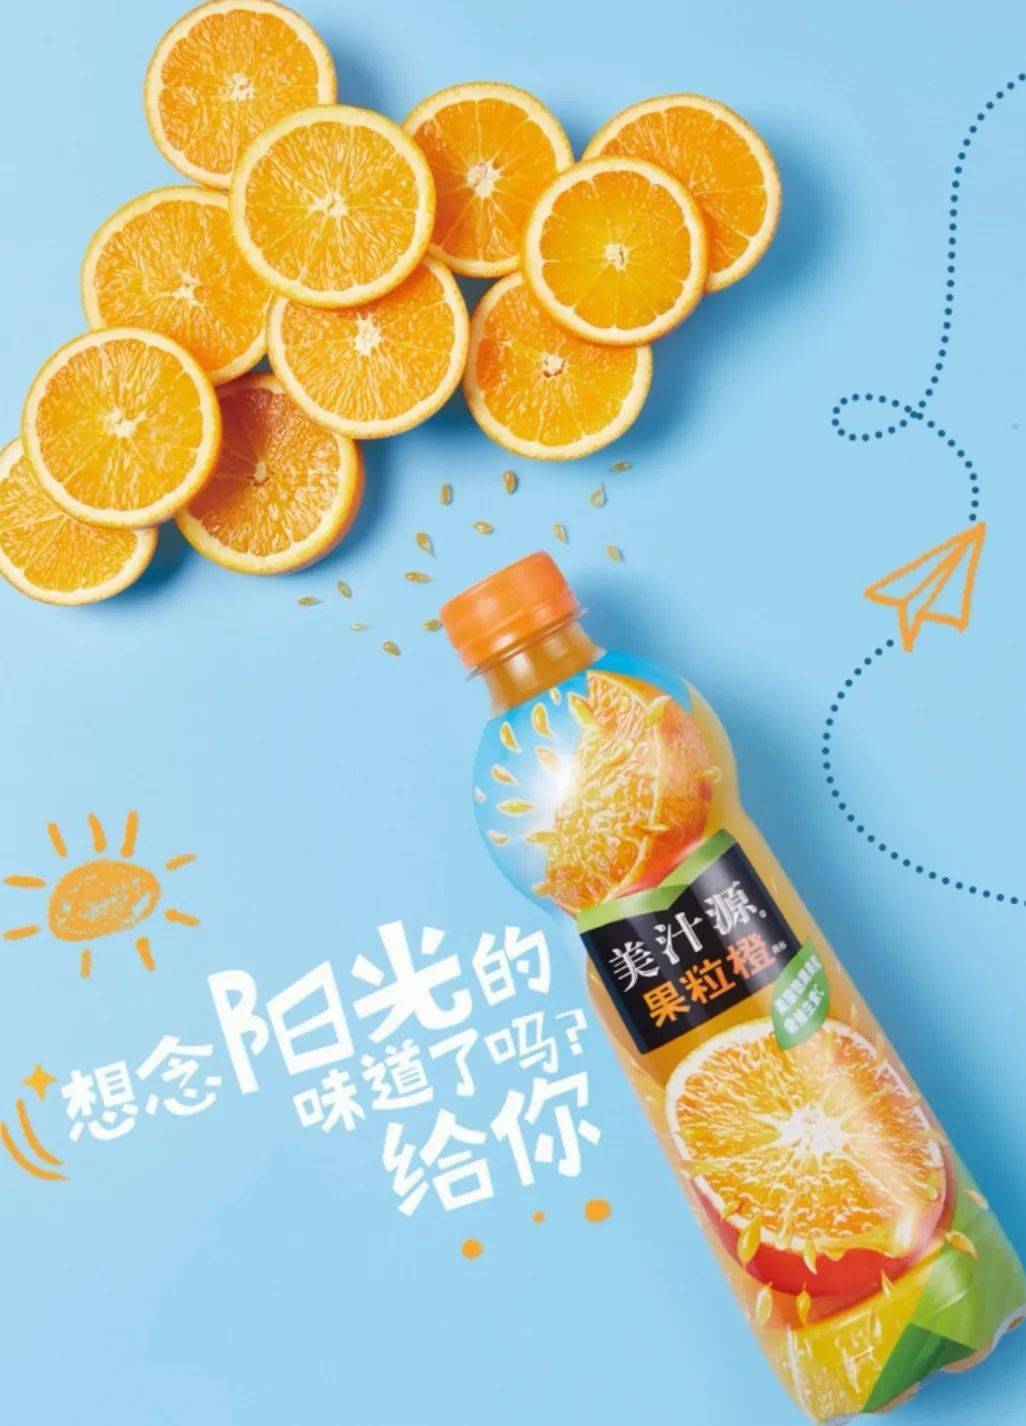 美汁源果粒橙广告图片